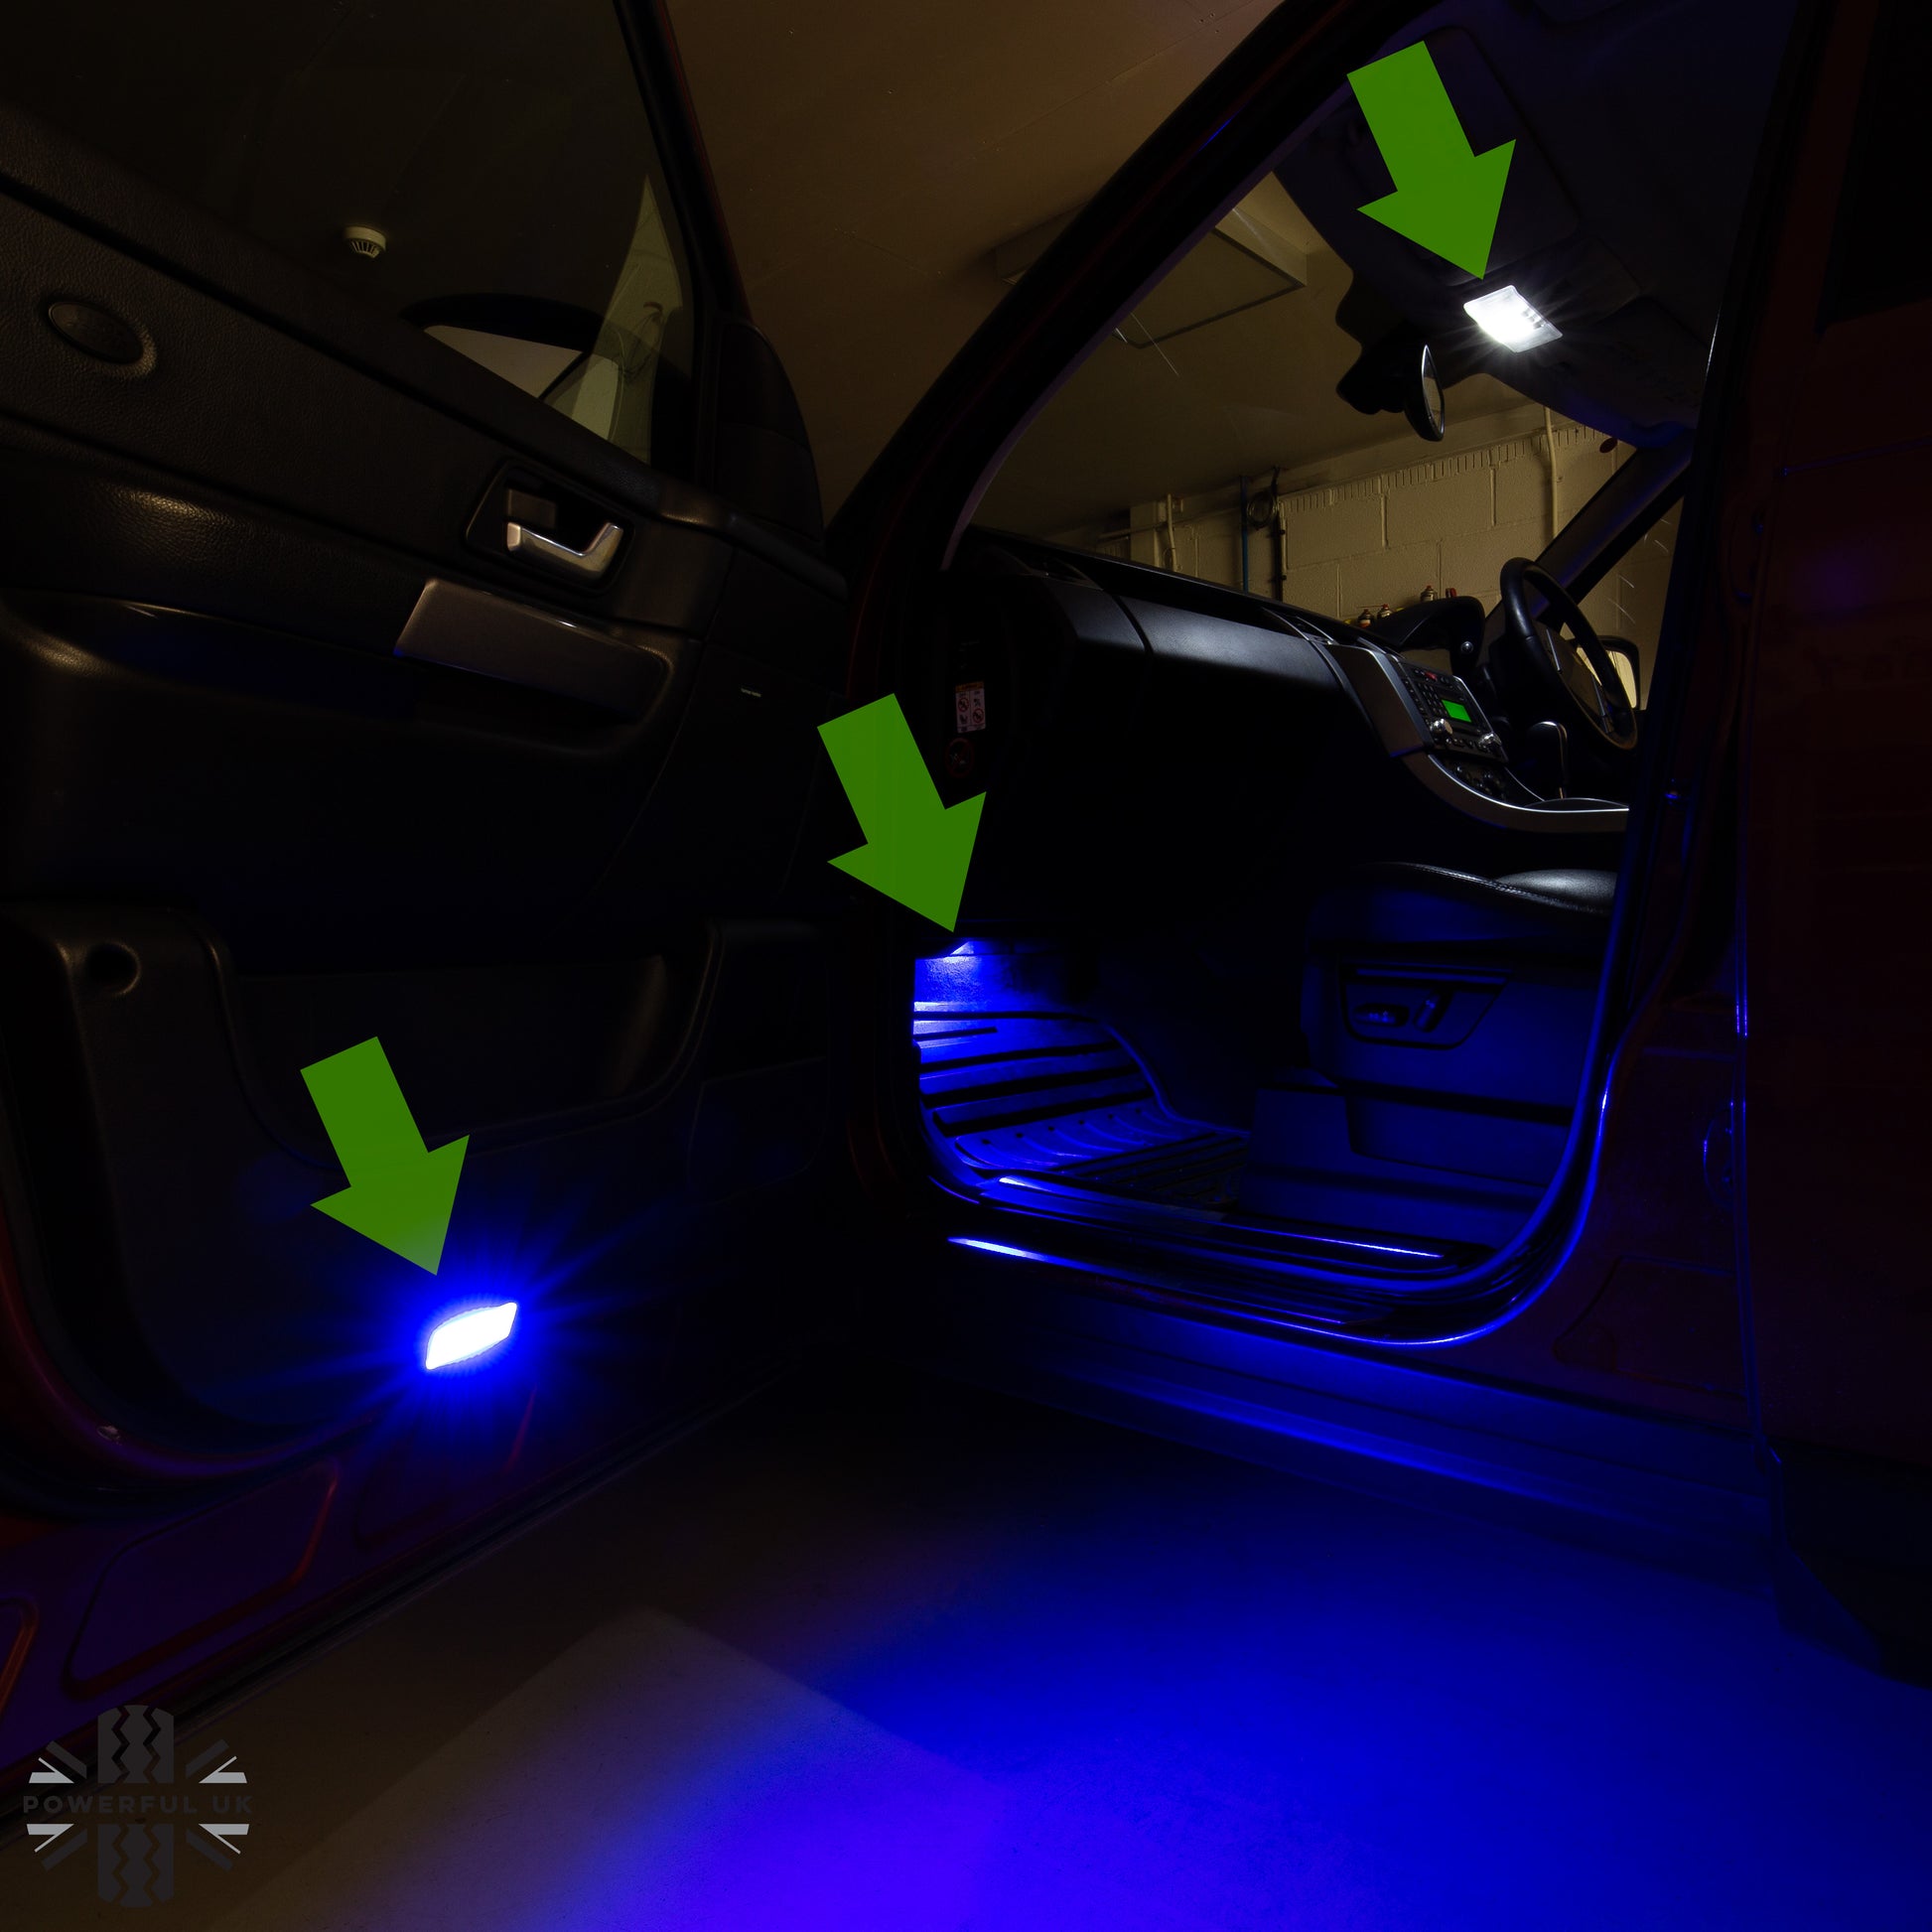 Range Rover Sport Premium LED Interior Lighting Package 2013, 2012, 2011,  2010